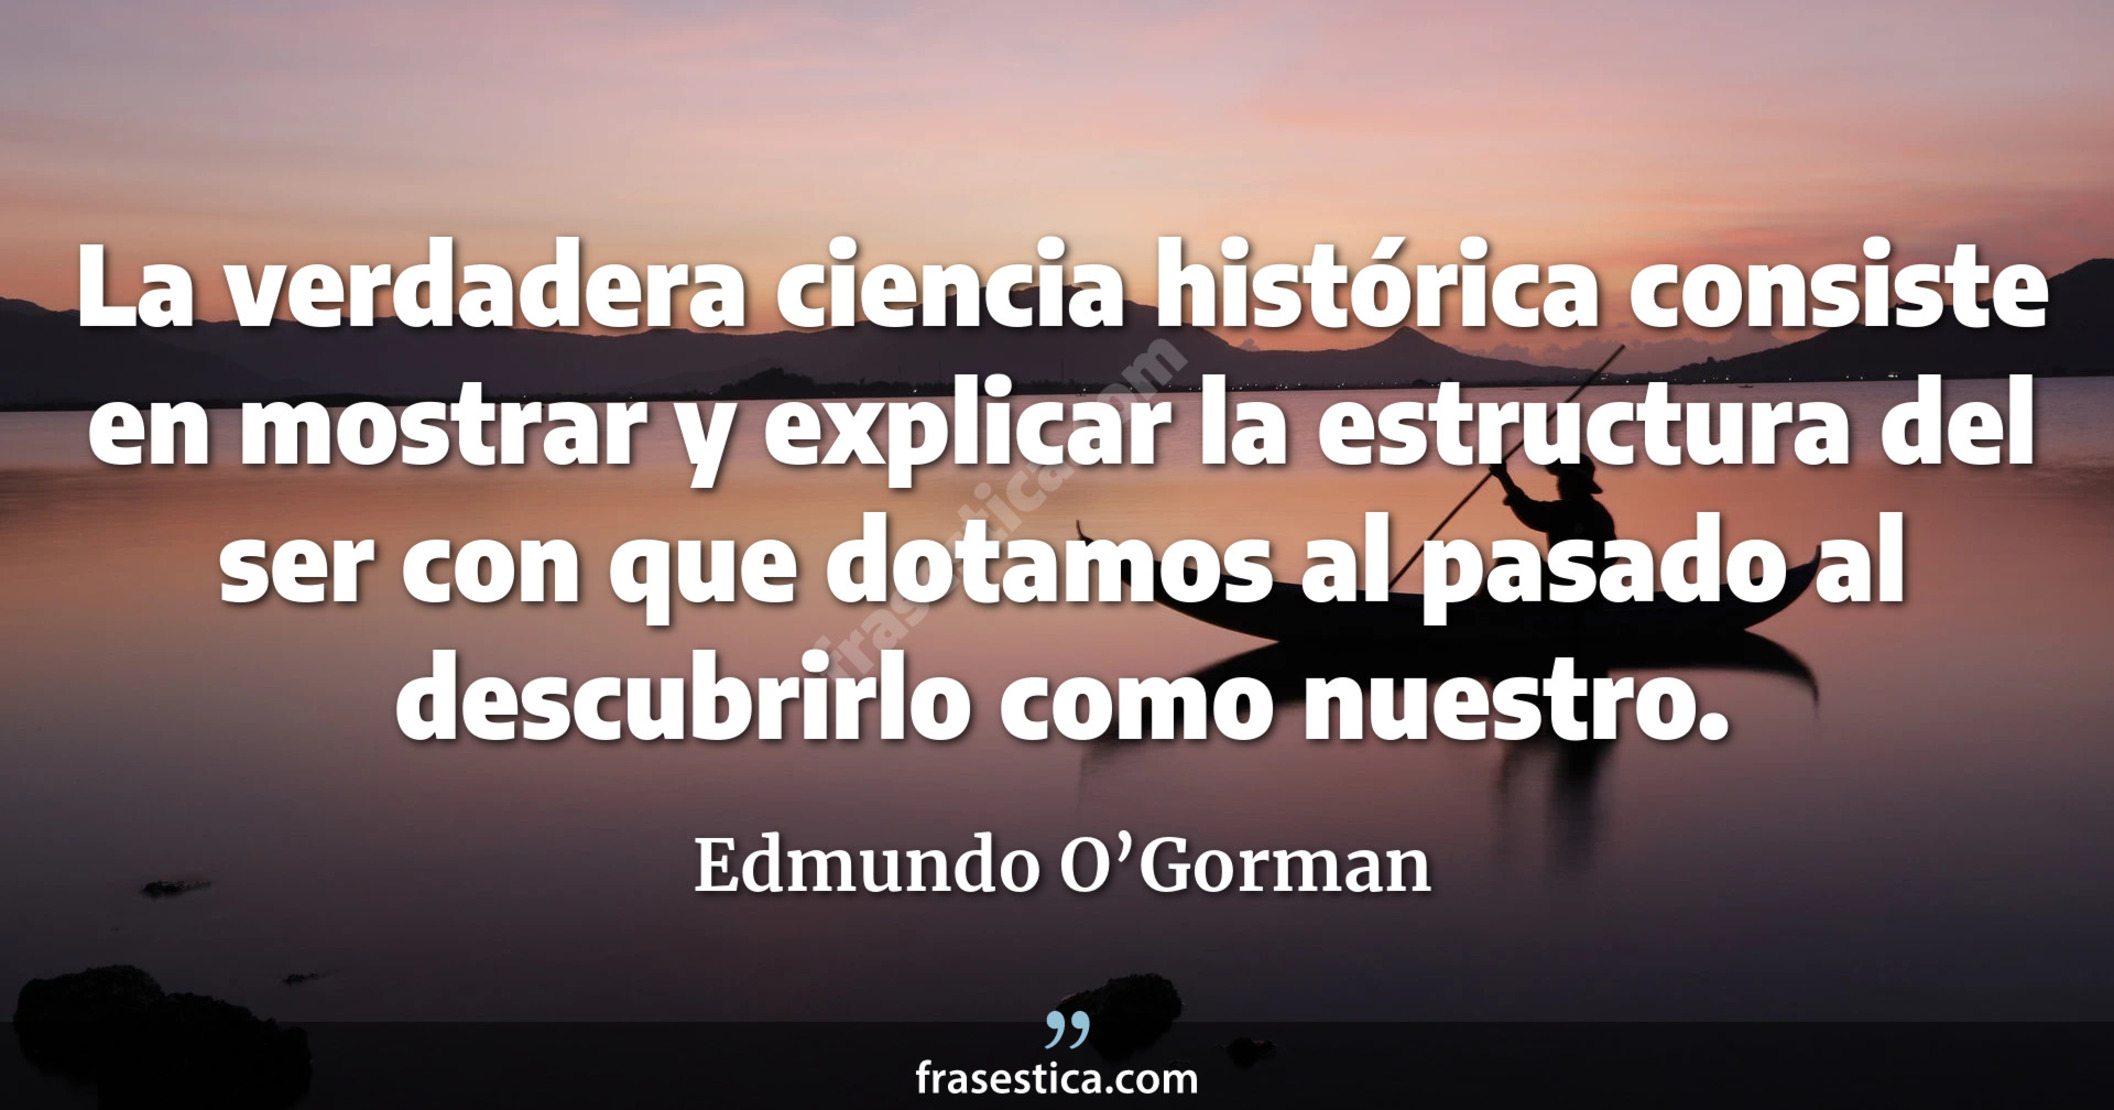 La verdadera ciencia histórica consiste en mostrar y explicar la estructura del ser con que dotamos al pasado al descubrirlo como nuestro. - Edmundo O’Gorman